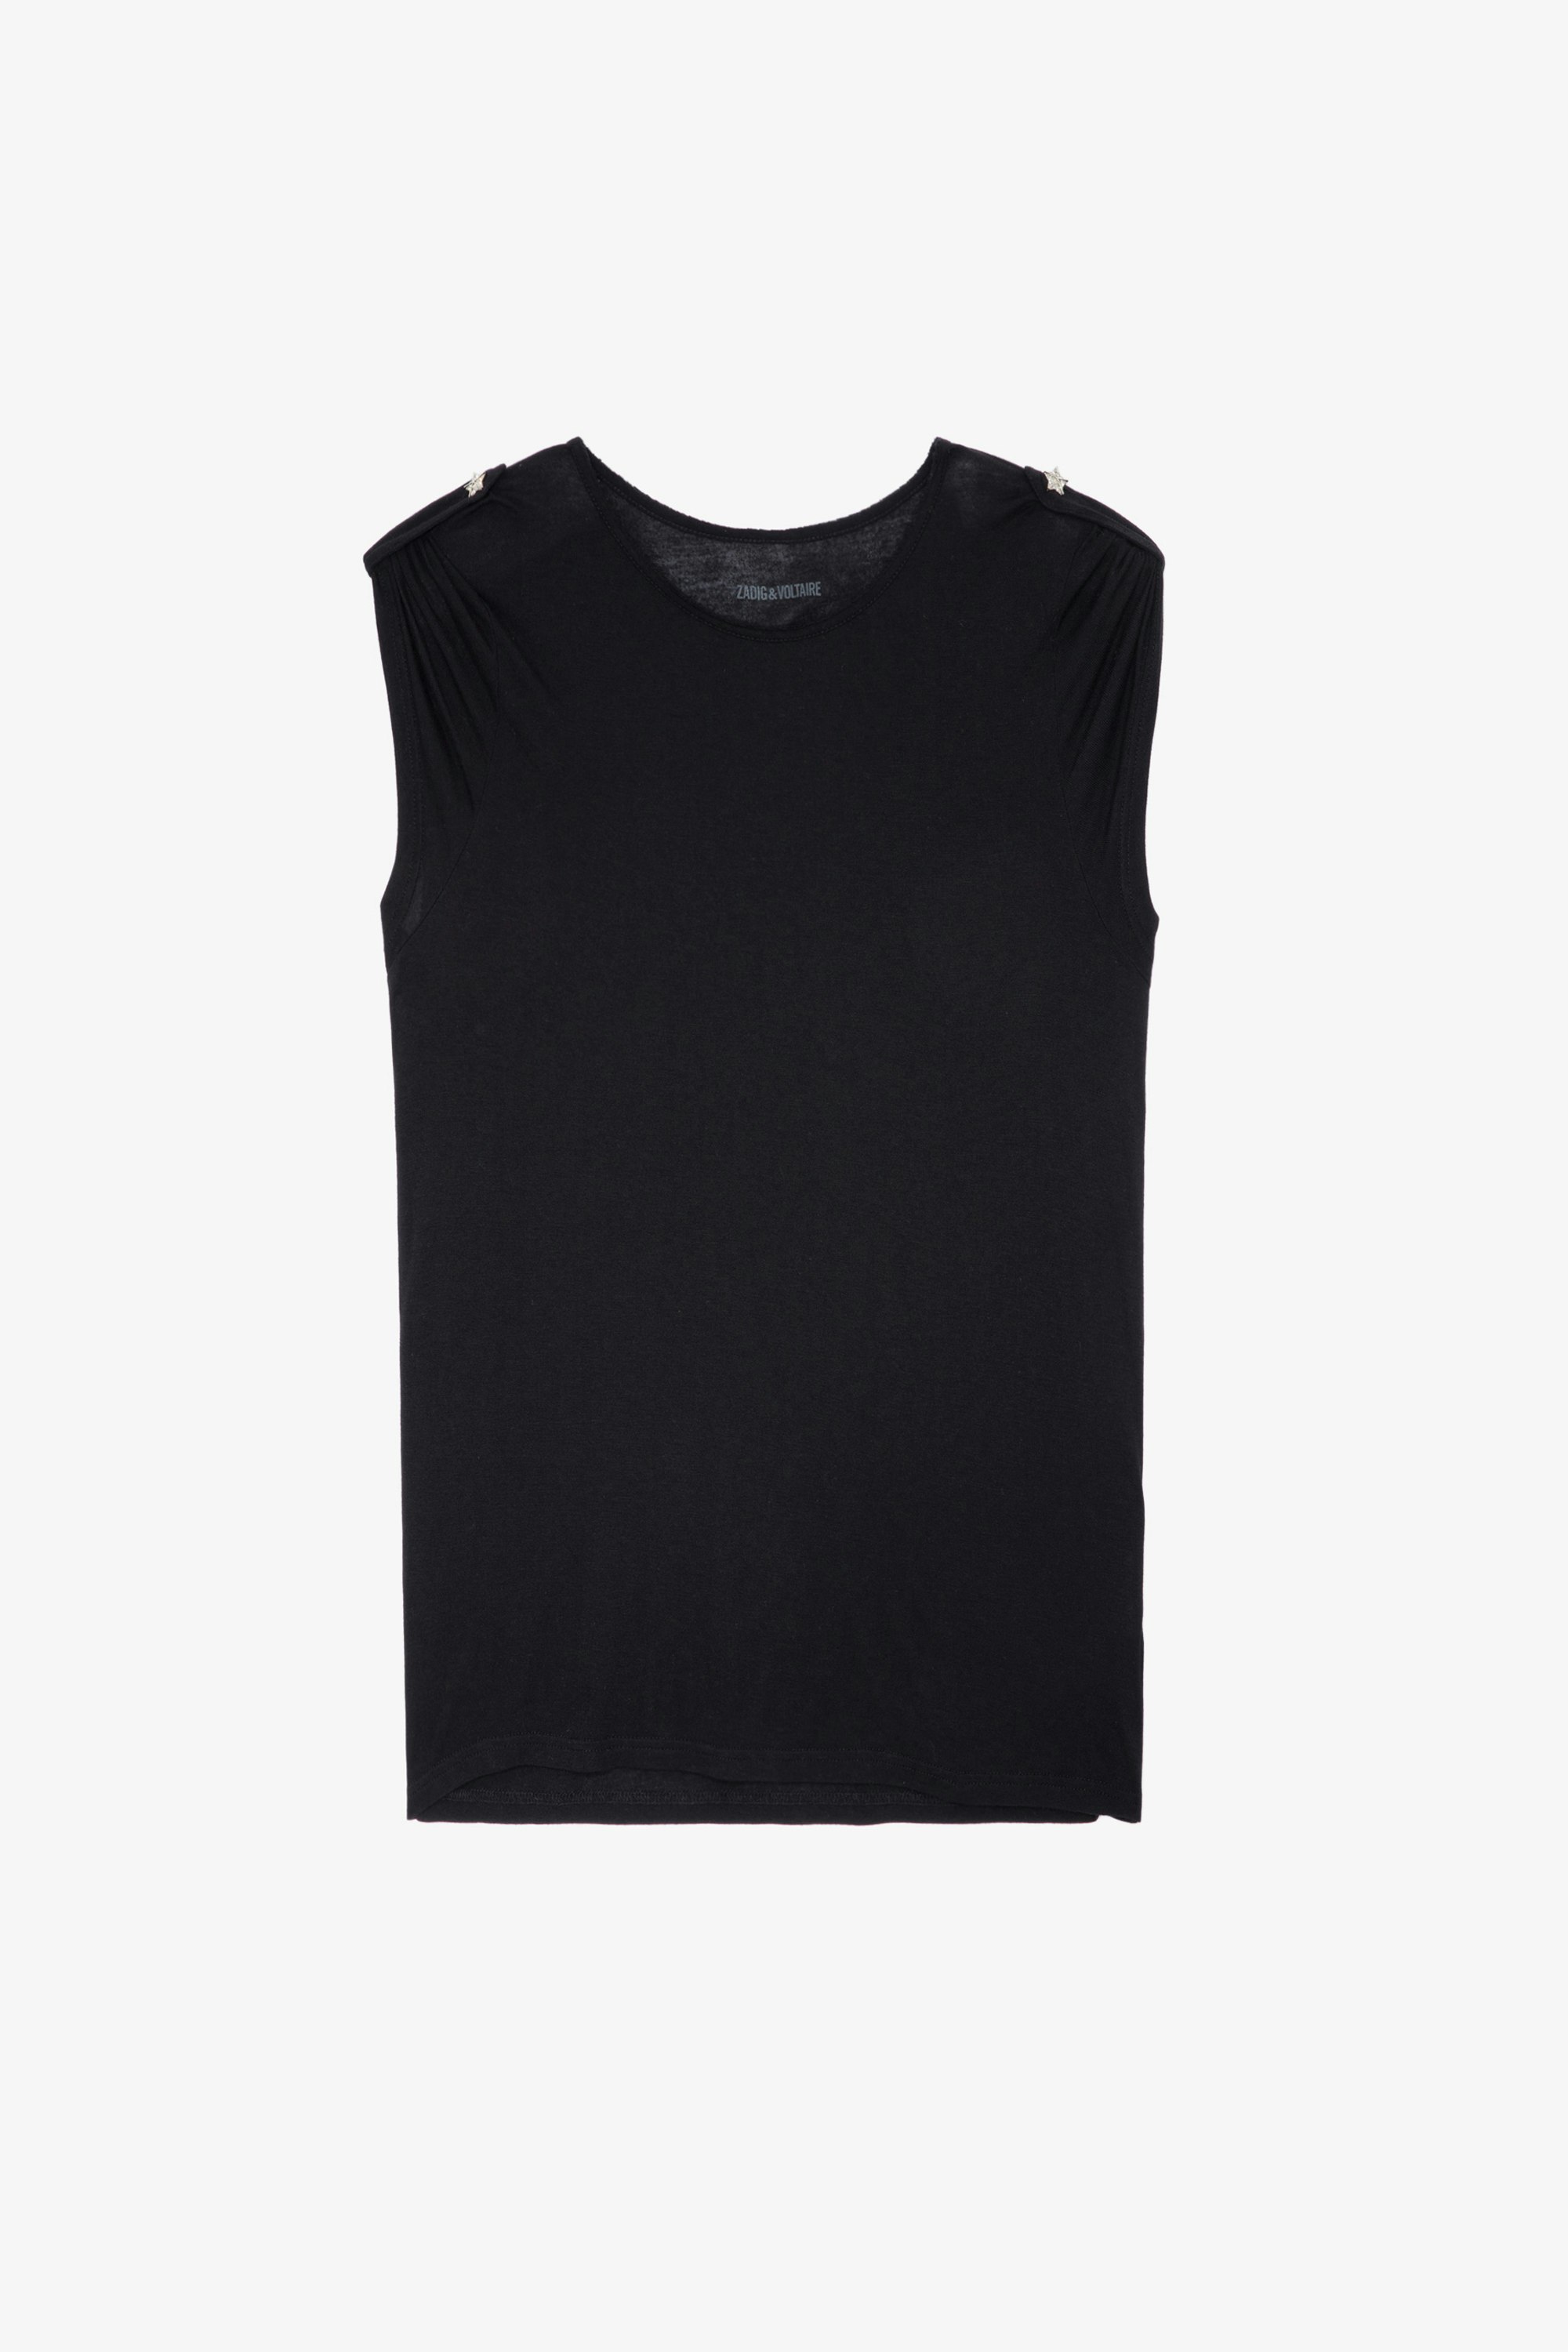 Camiseta Donate Bijoux - Camiseta negra con botones de bisutería en forma de estrella para mujer.